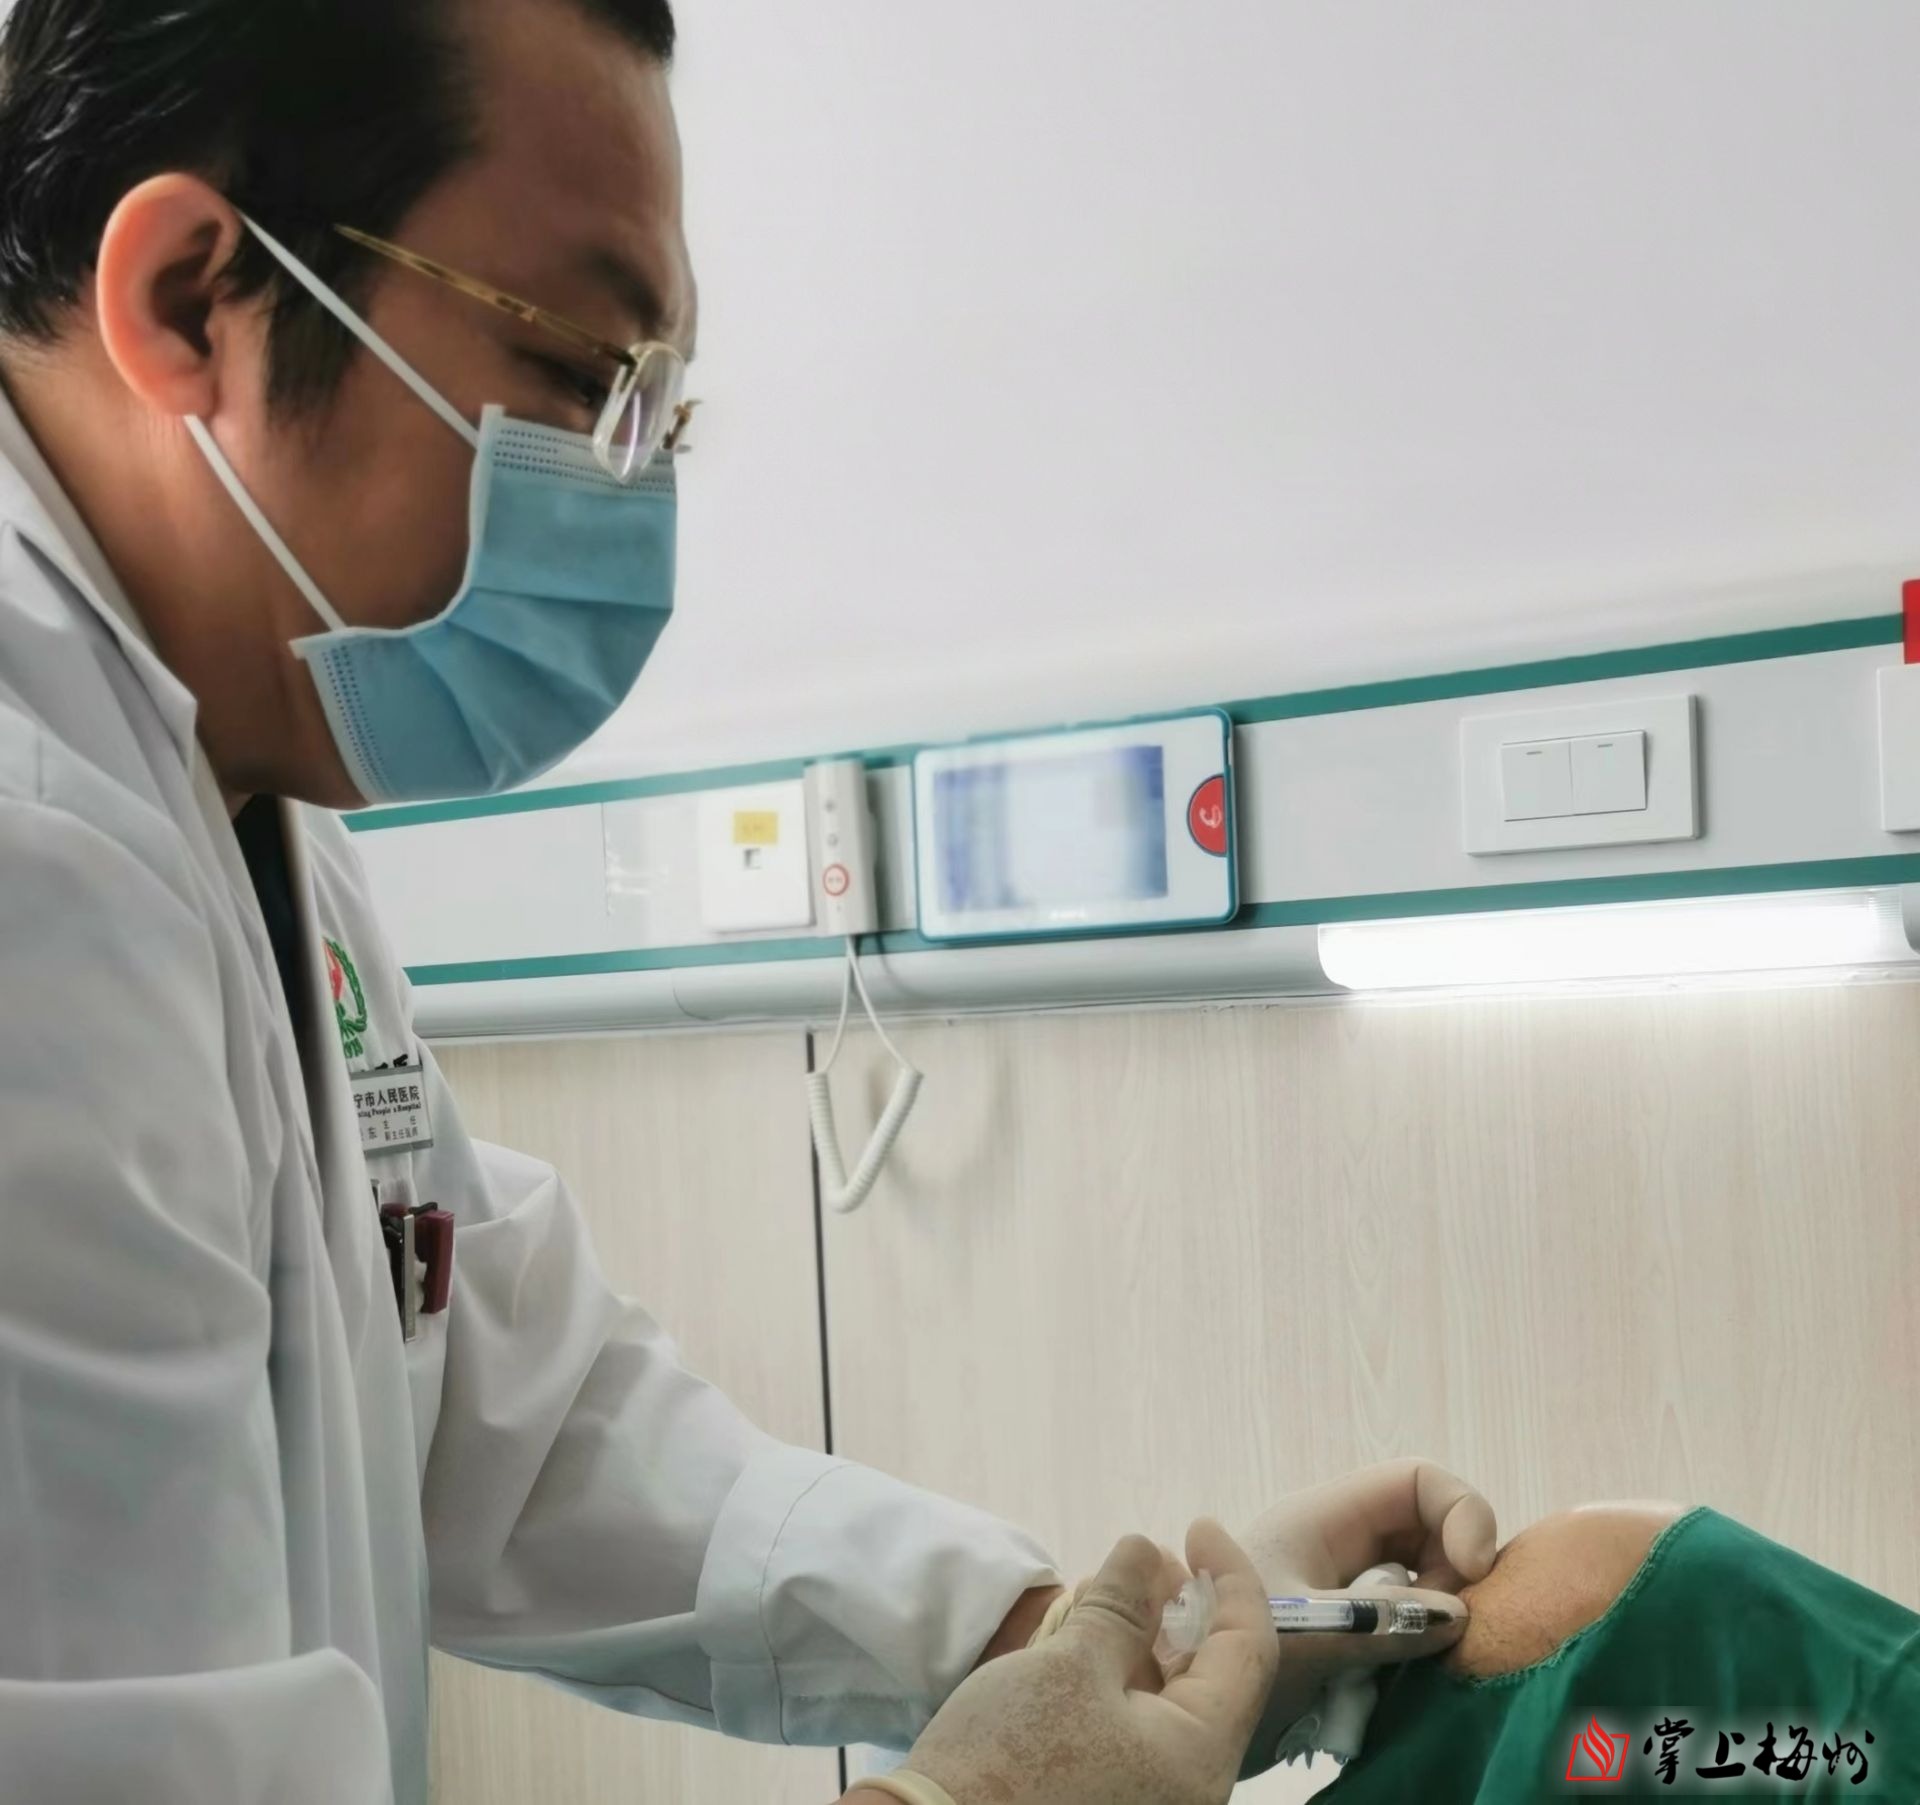 兴宁市人民医院成功开展PRP治疗技术造福患者